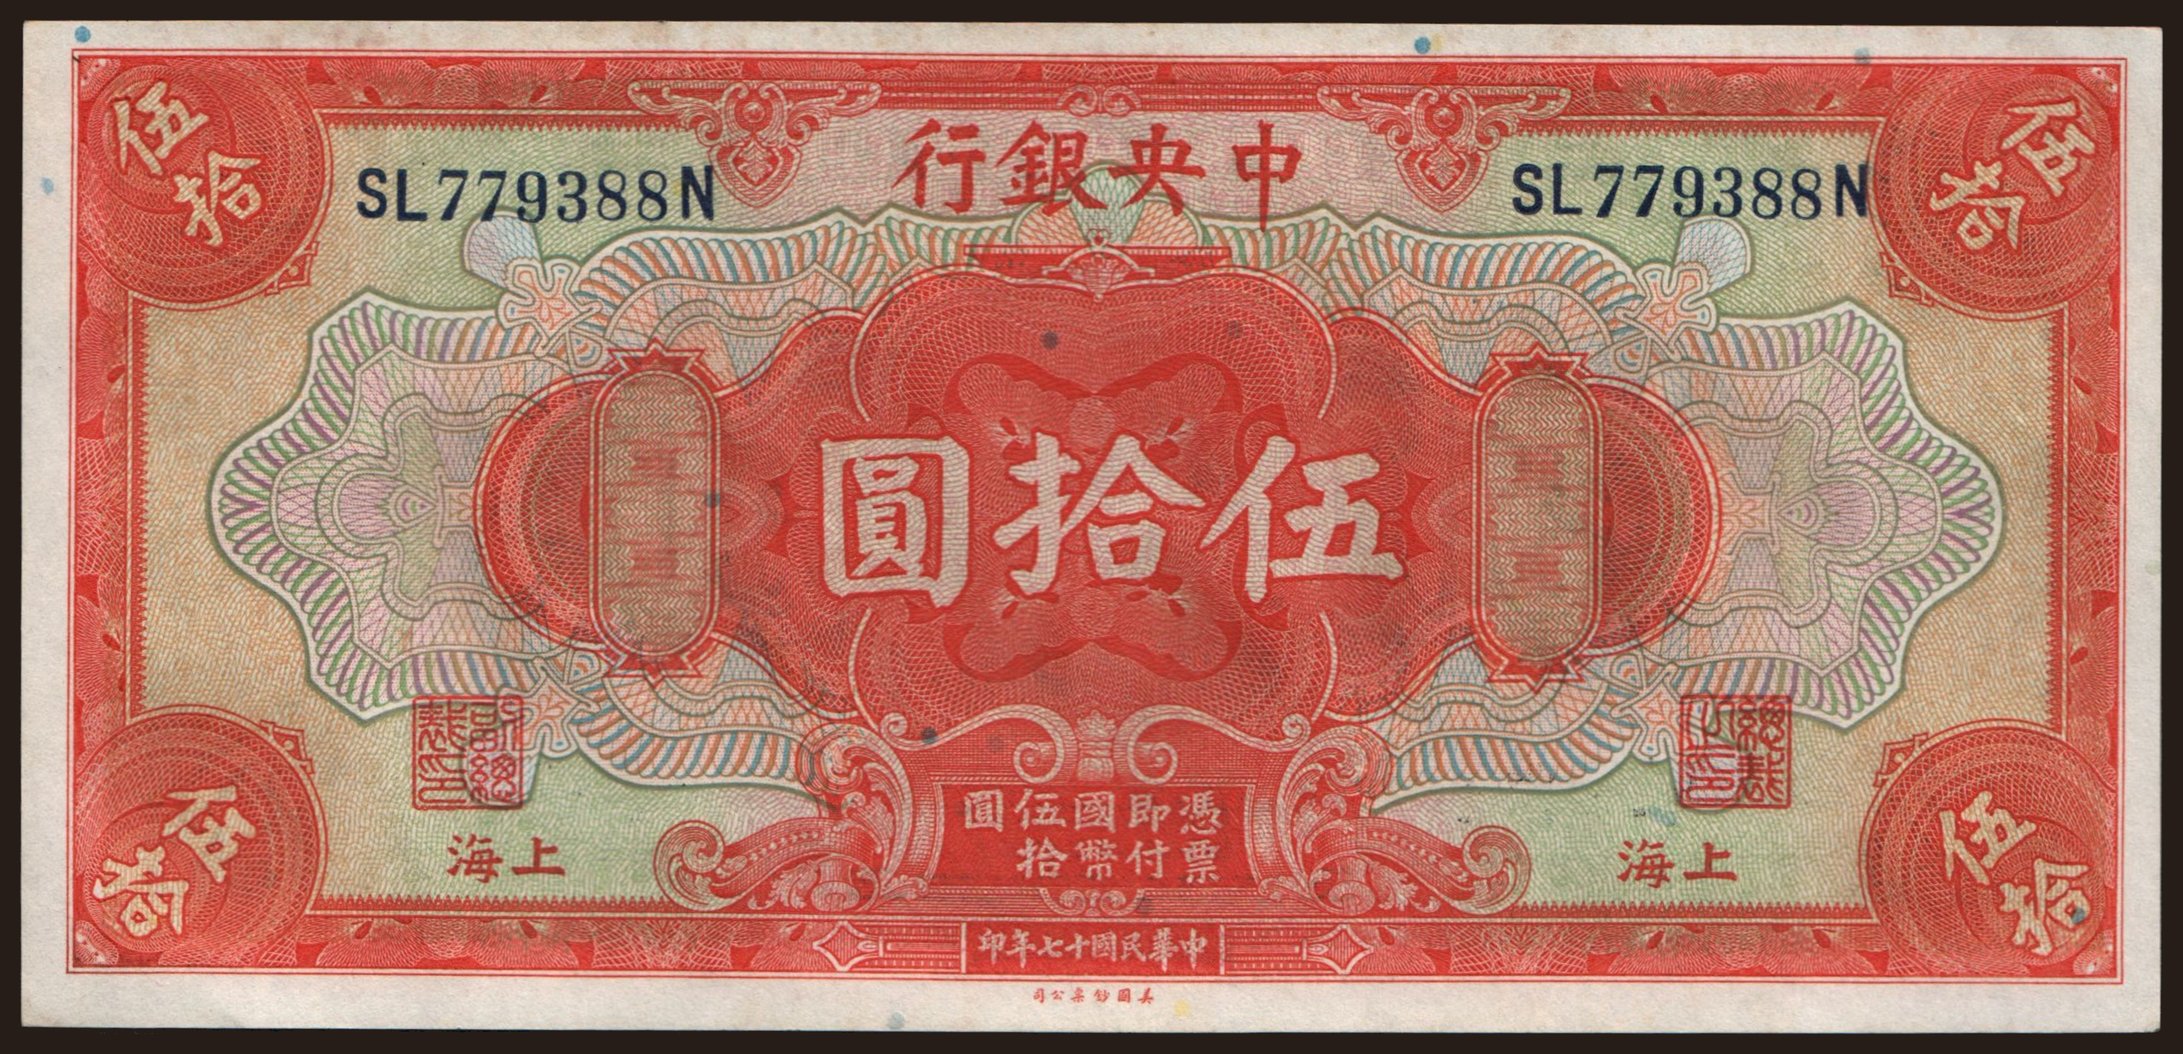 Central Bank of China, 50 dollars, 1928